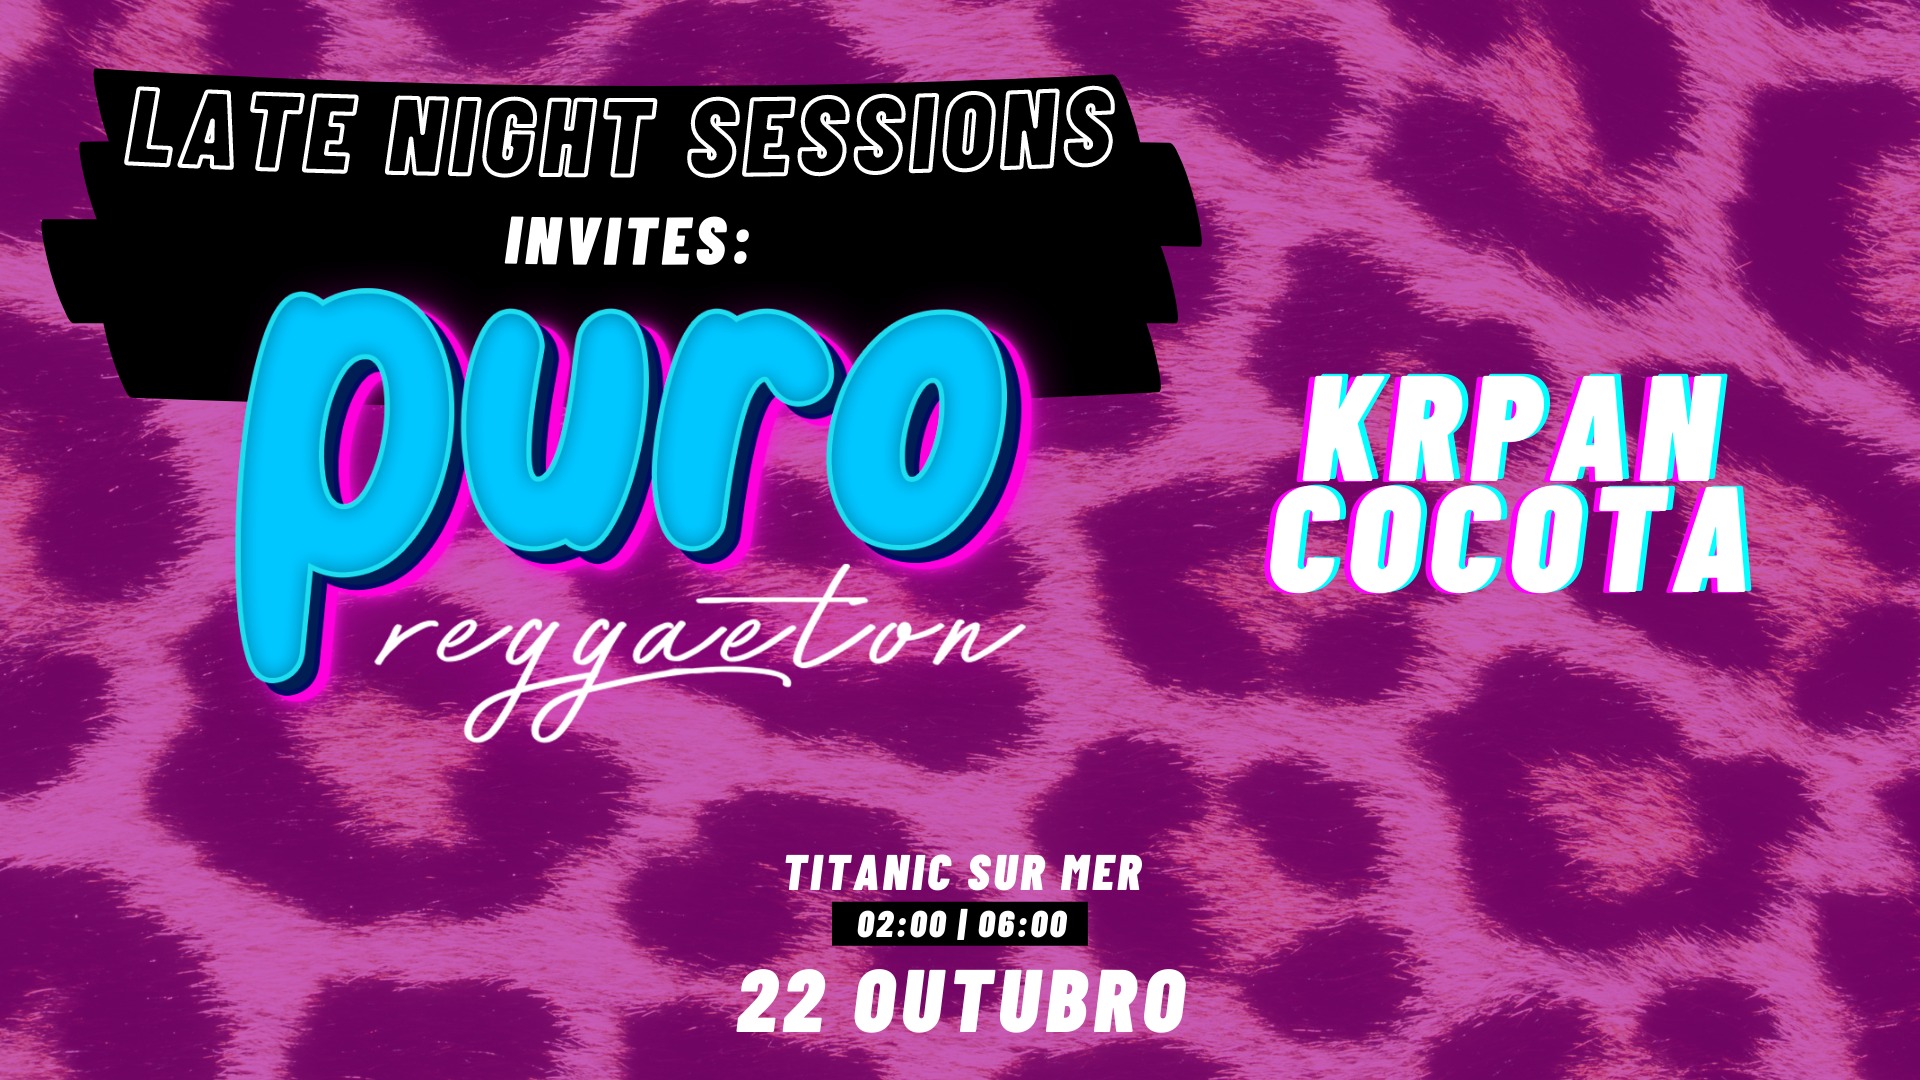 Late Night Sessions invites Puro Reggaeton @ Titanic Sur Mer